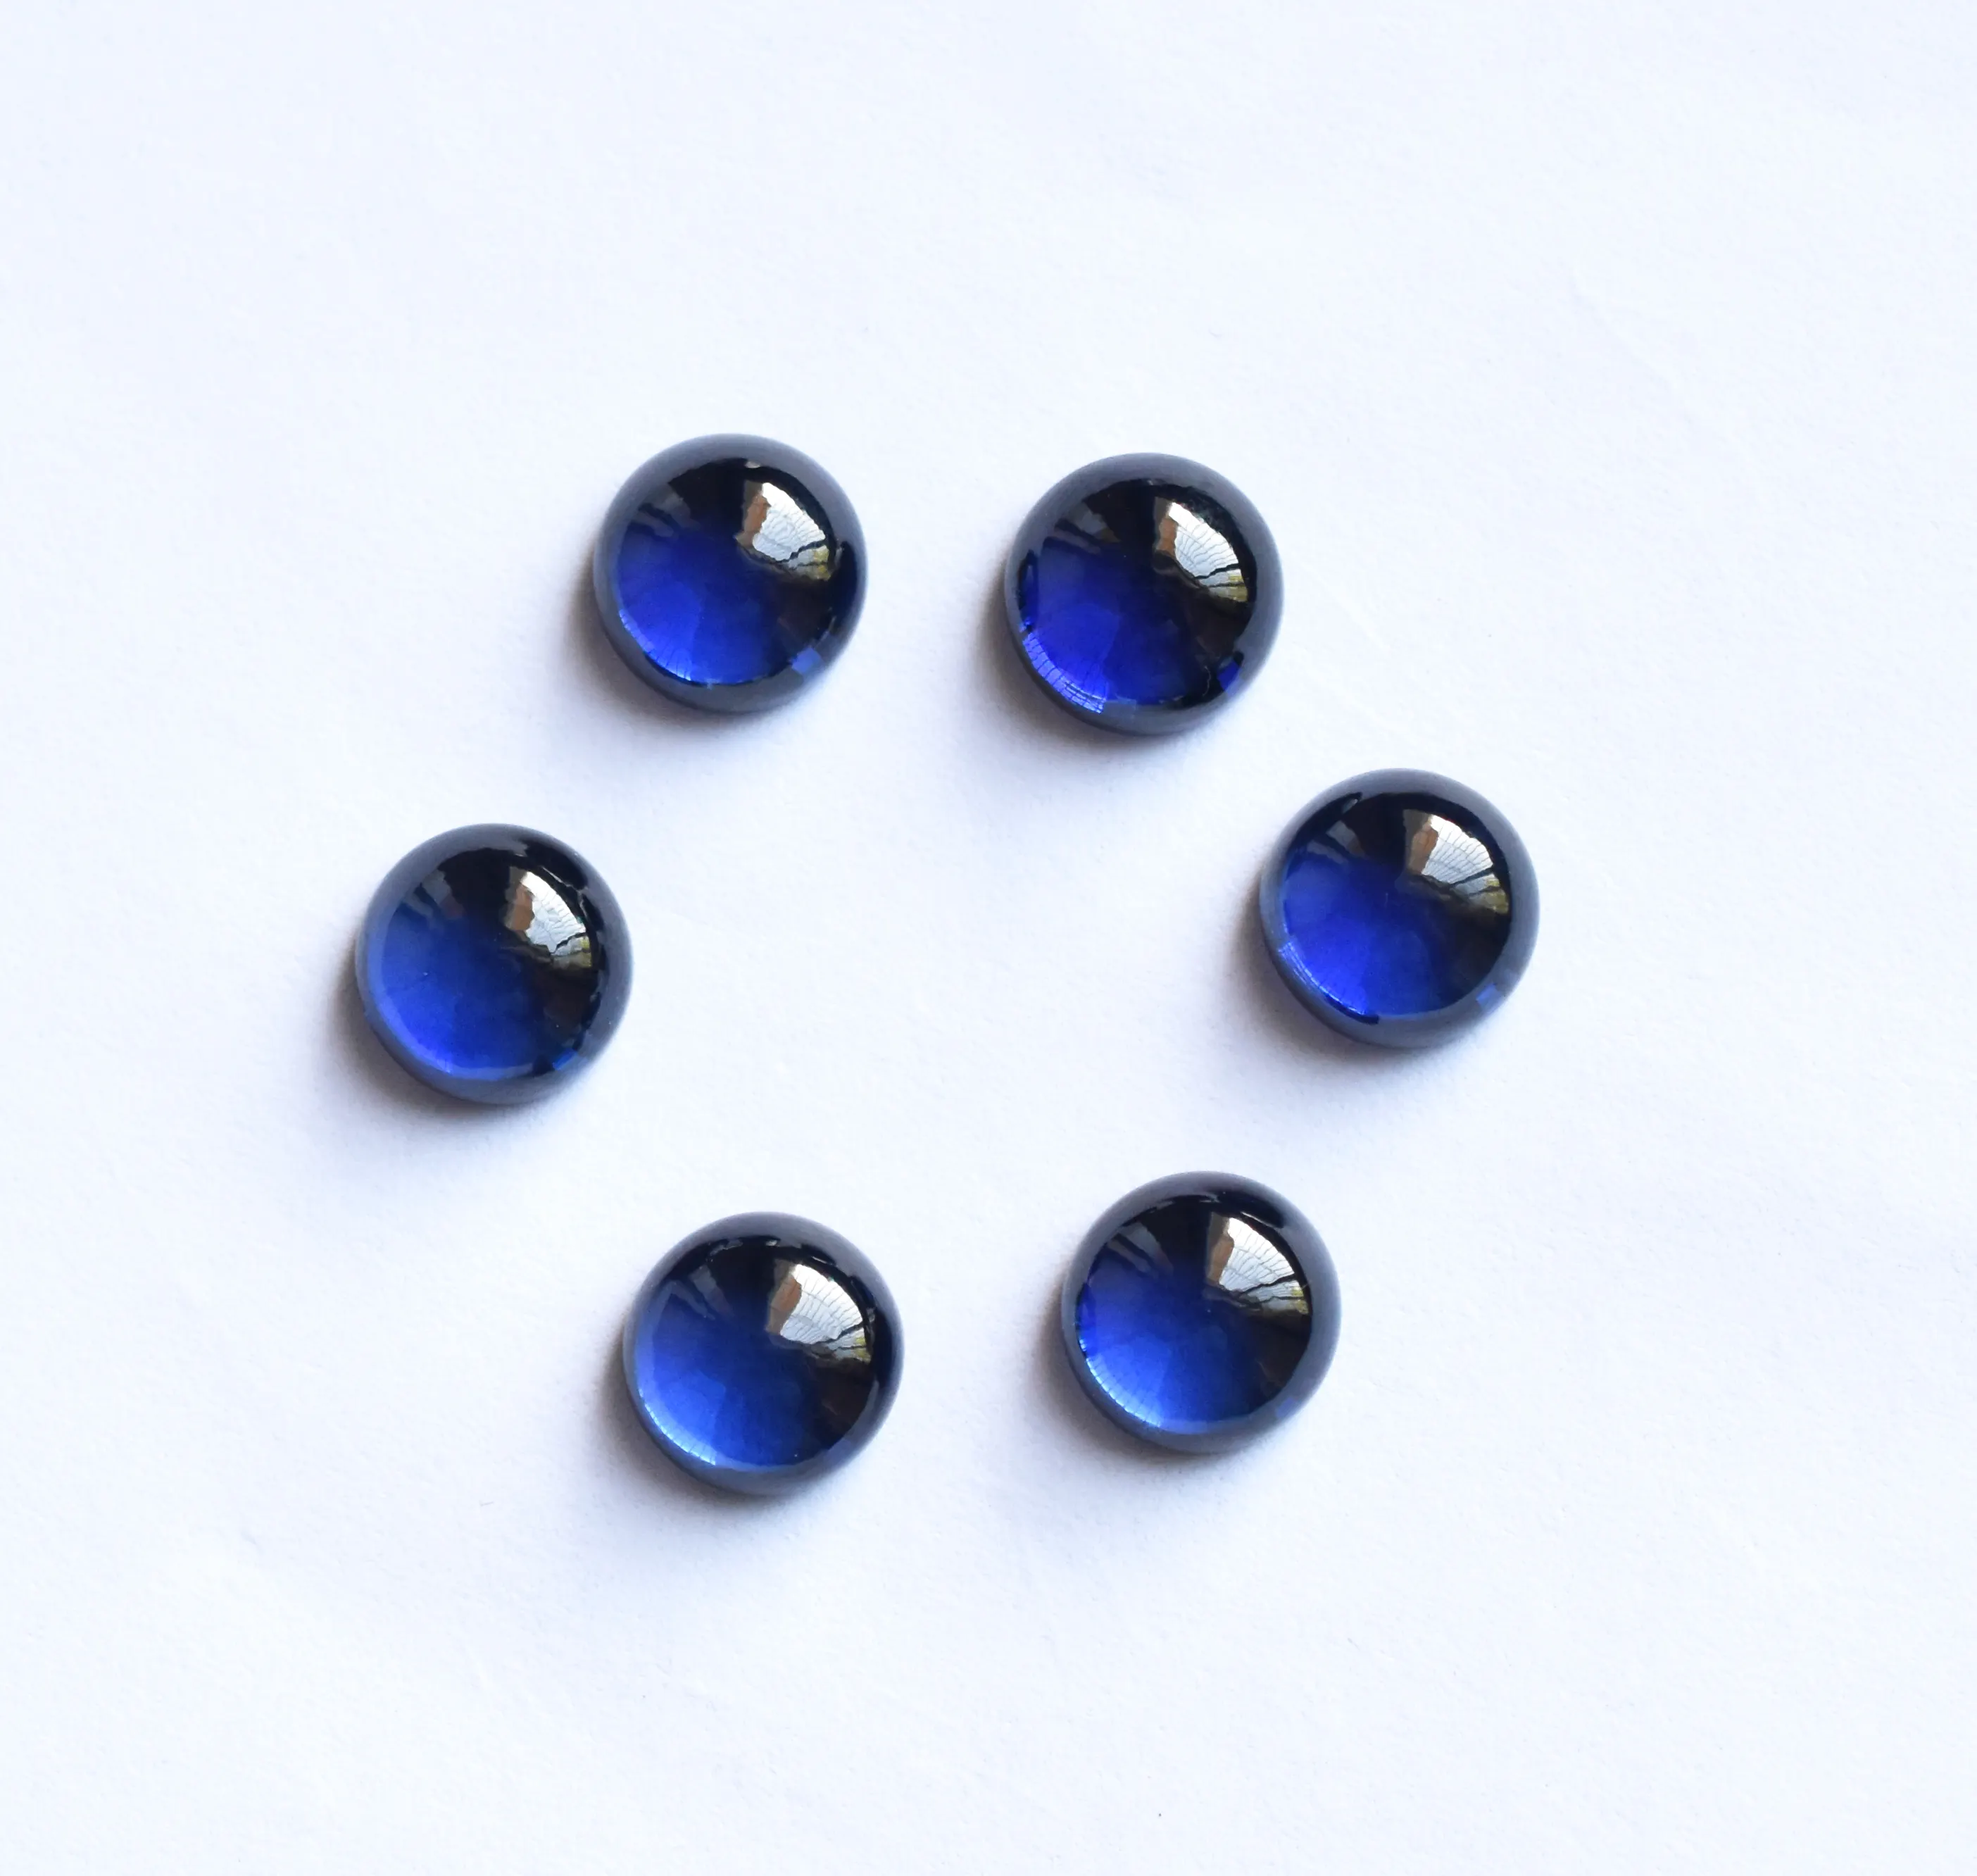 Выращенный в лаборатории синий сапфир Круглый Калиброванный свободный драгоценный камень от 3 мм до 15 мм доступный Гладкий кабошон драгоценный камень для ювелирных изделий.